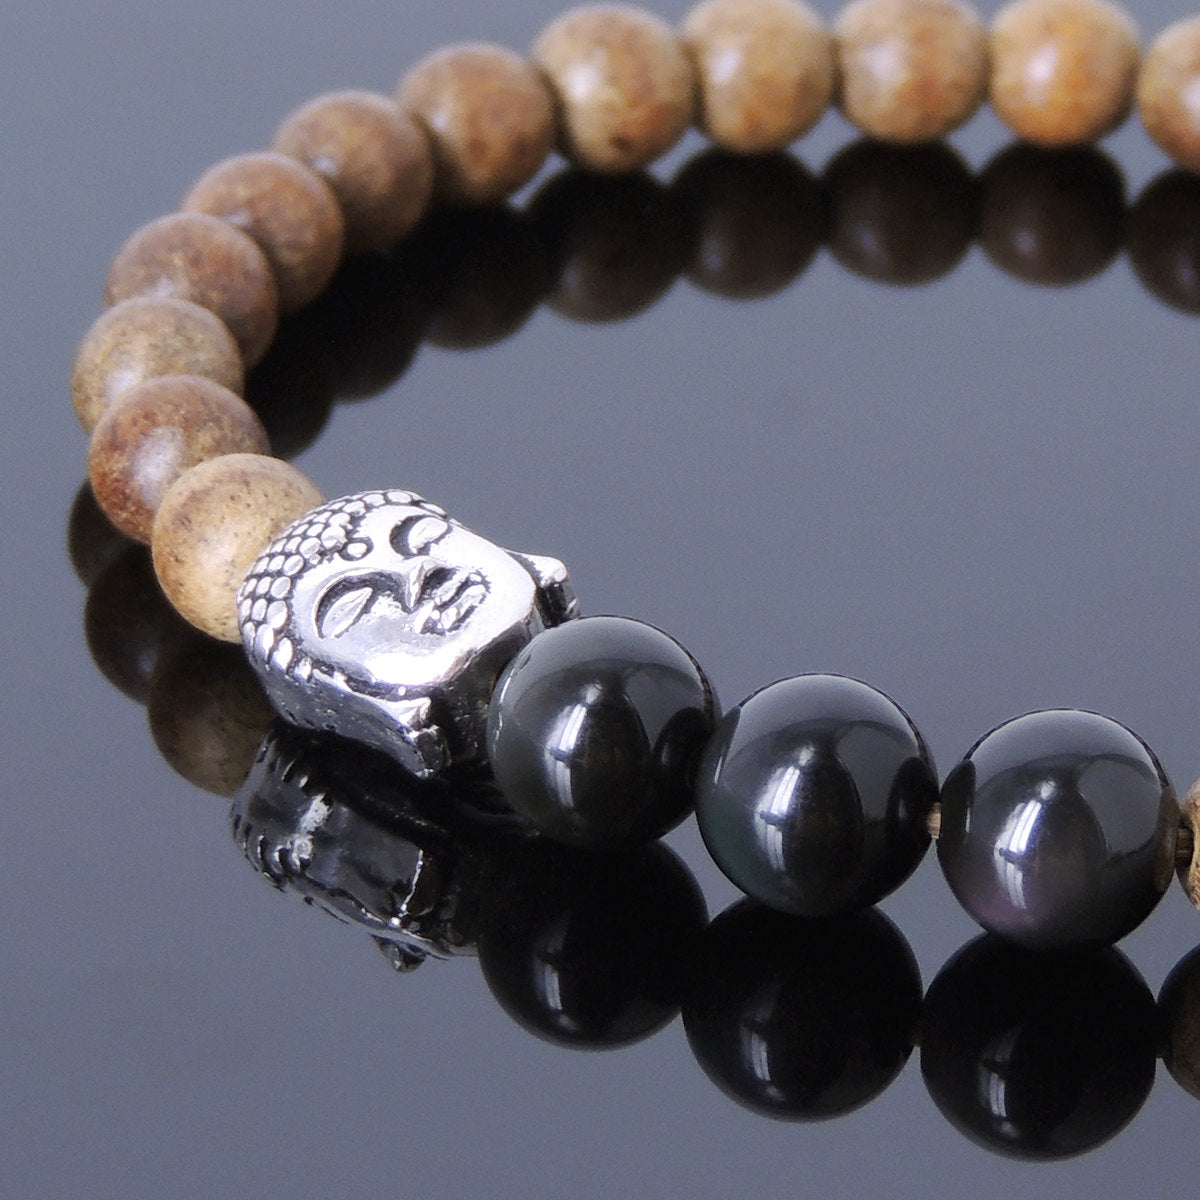 Agarwood & Rainbow Black Obsidian Meditation Bracelet with S925 Sterling Silver Guanyin Buddha Bead - Handmade by Gem & Silver BR439